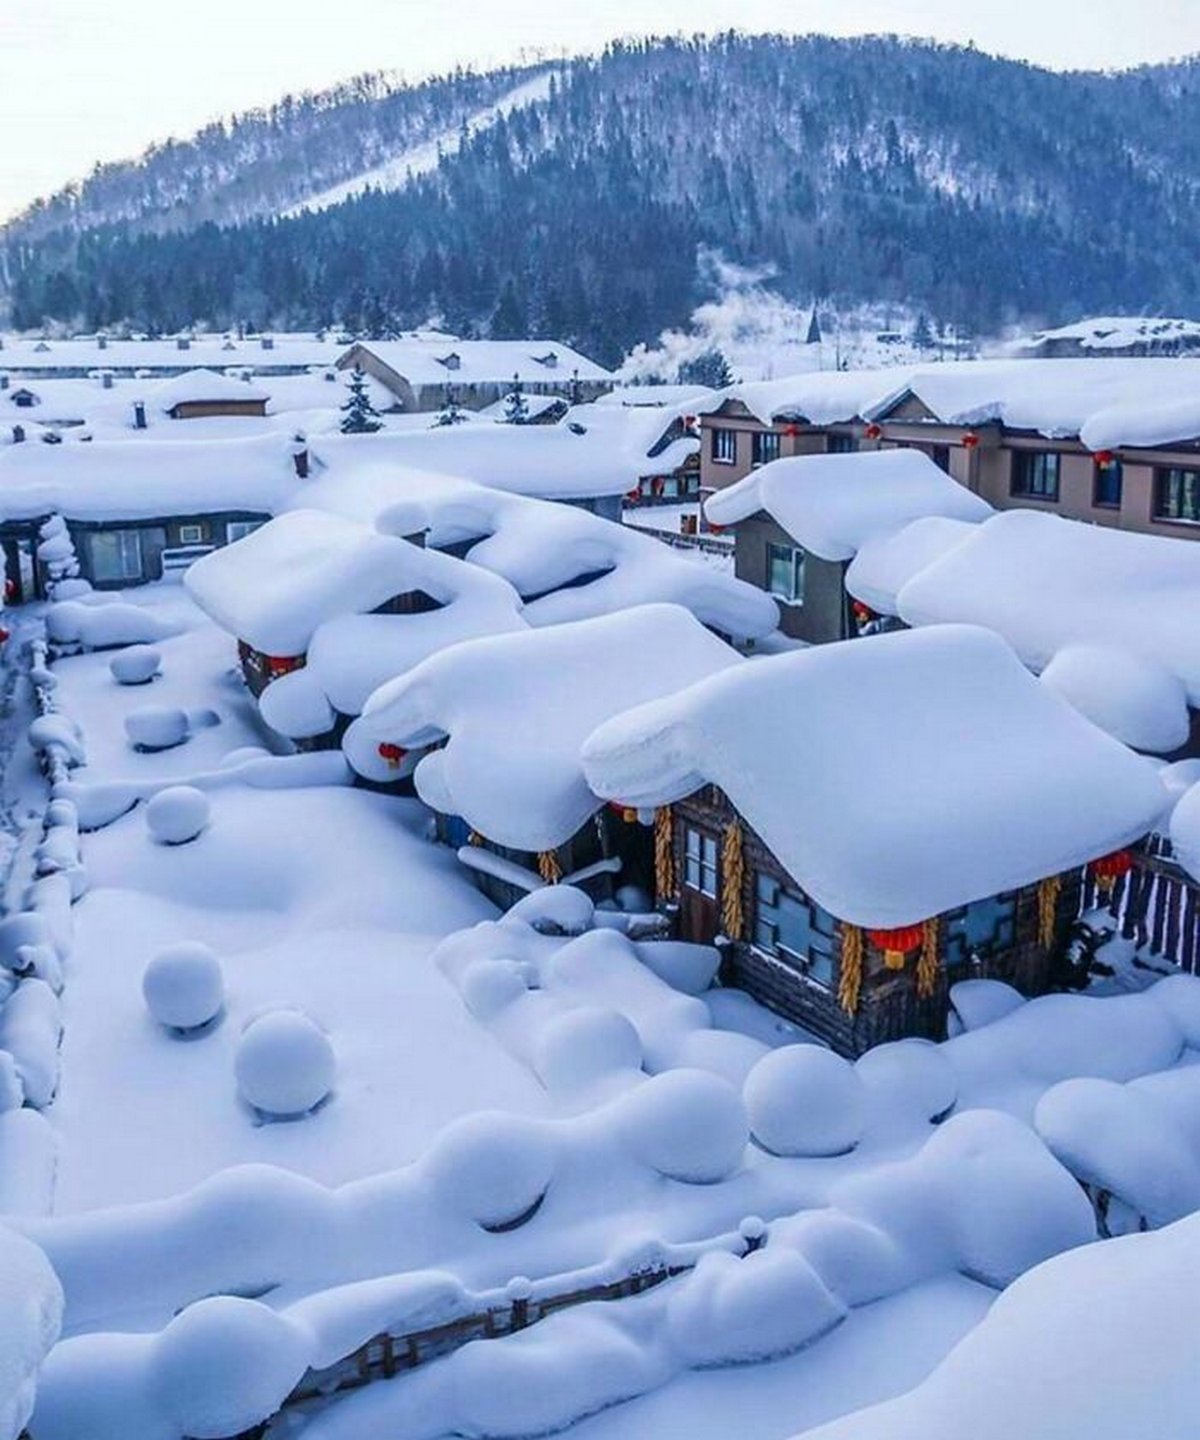 La façon dont la neige s’est accumulée sur ces maisons